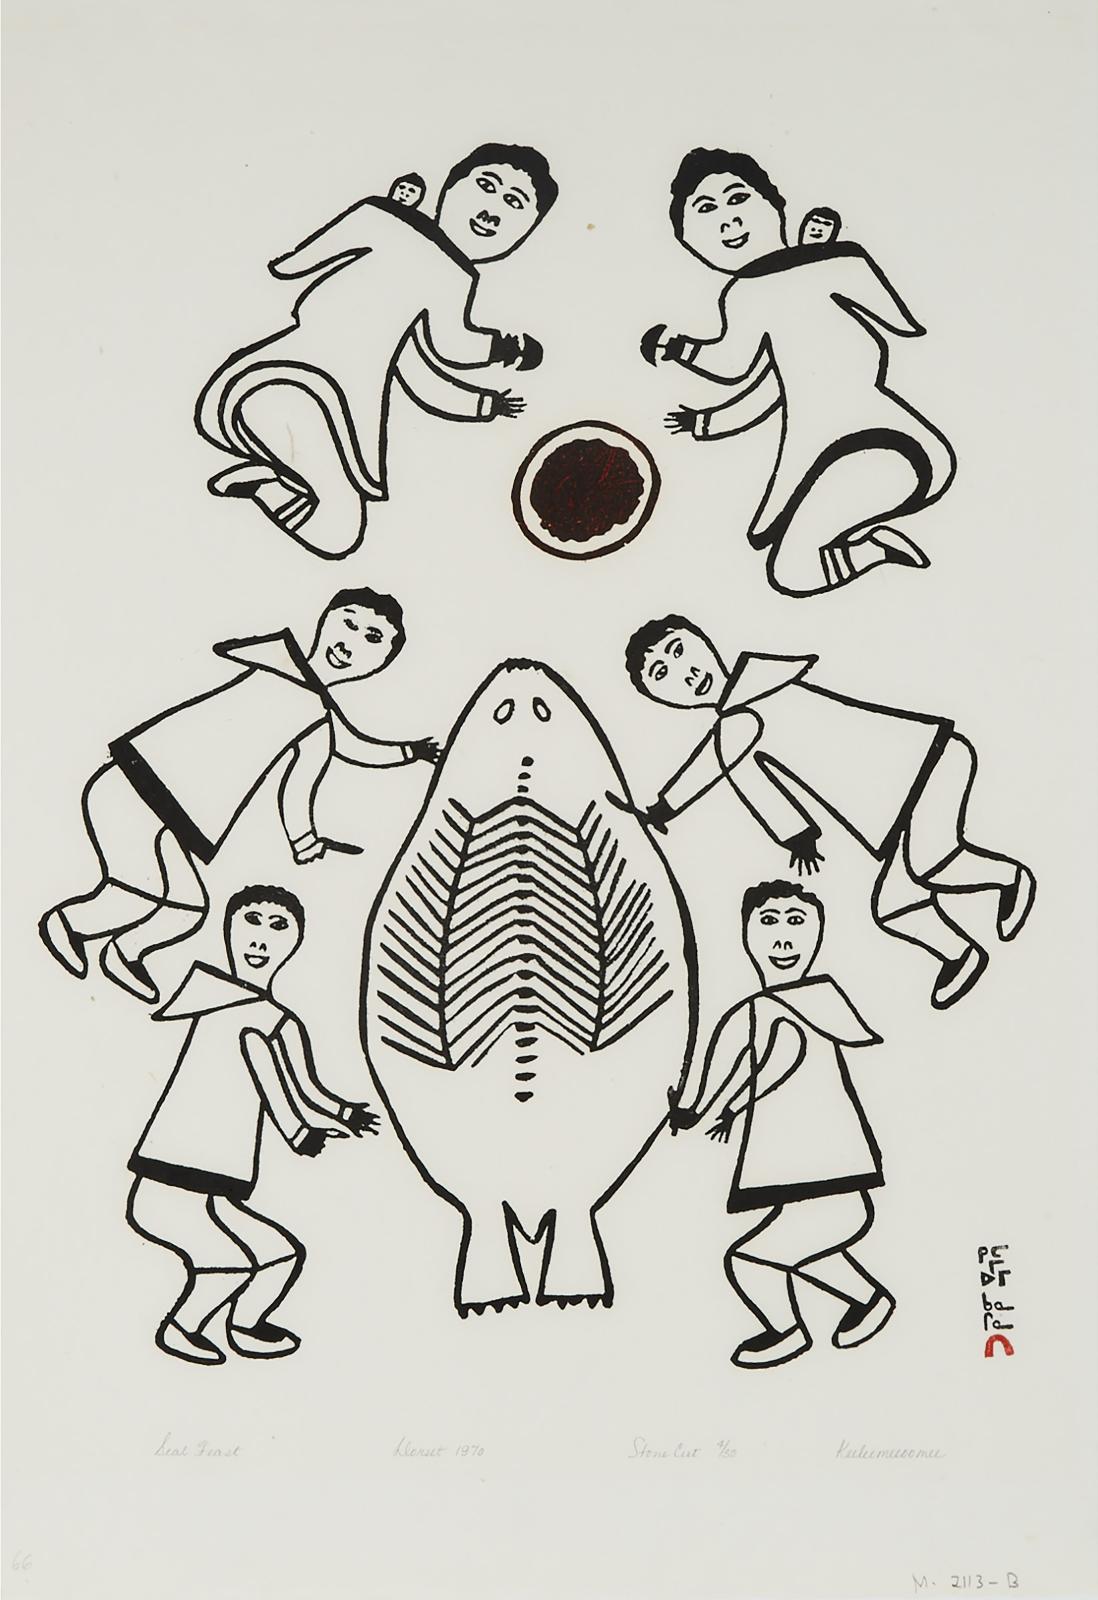 Keeleemeeoomee Samualie (1919-1983) - Seal Feast